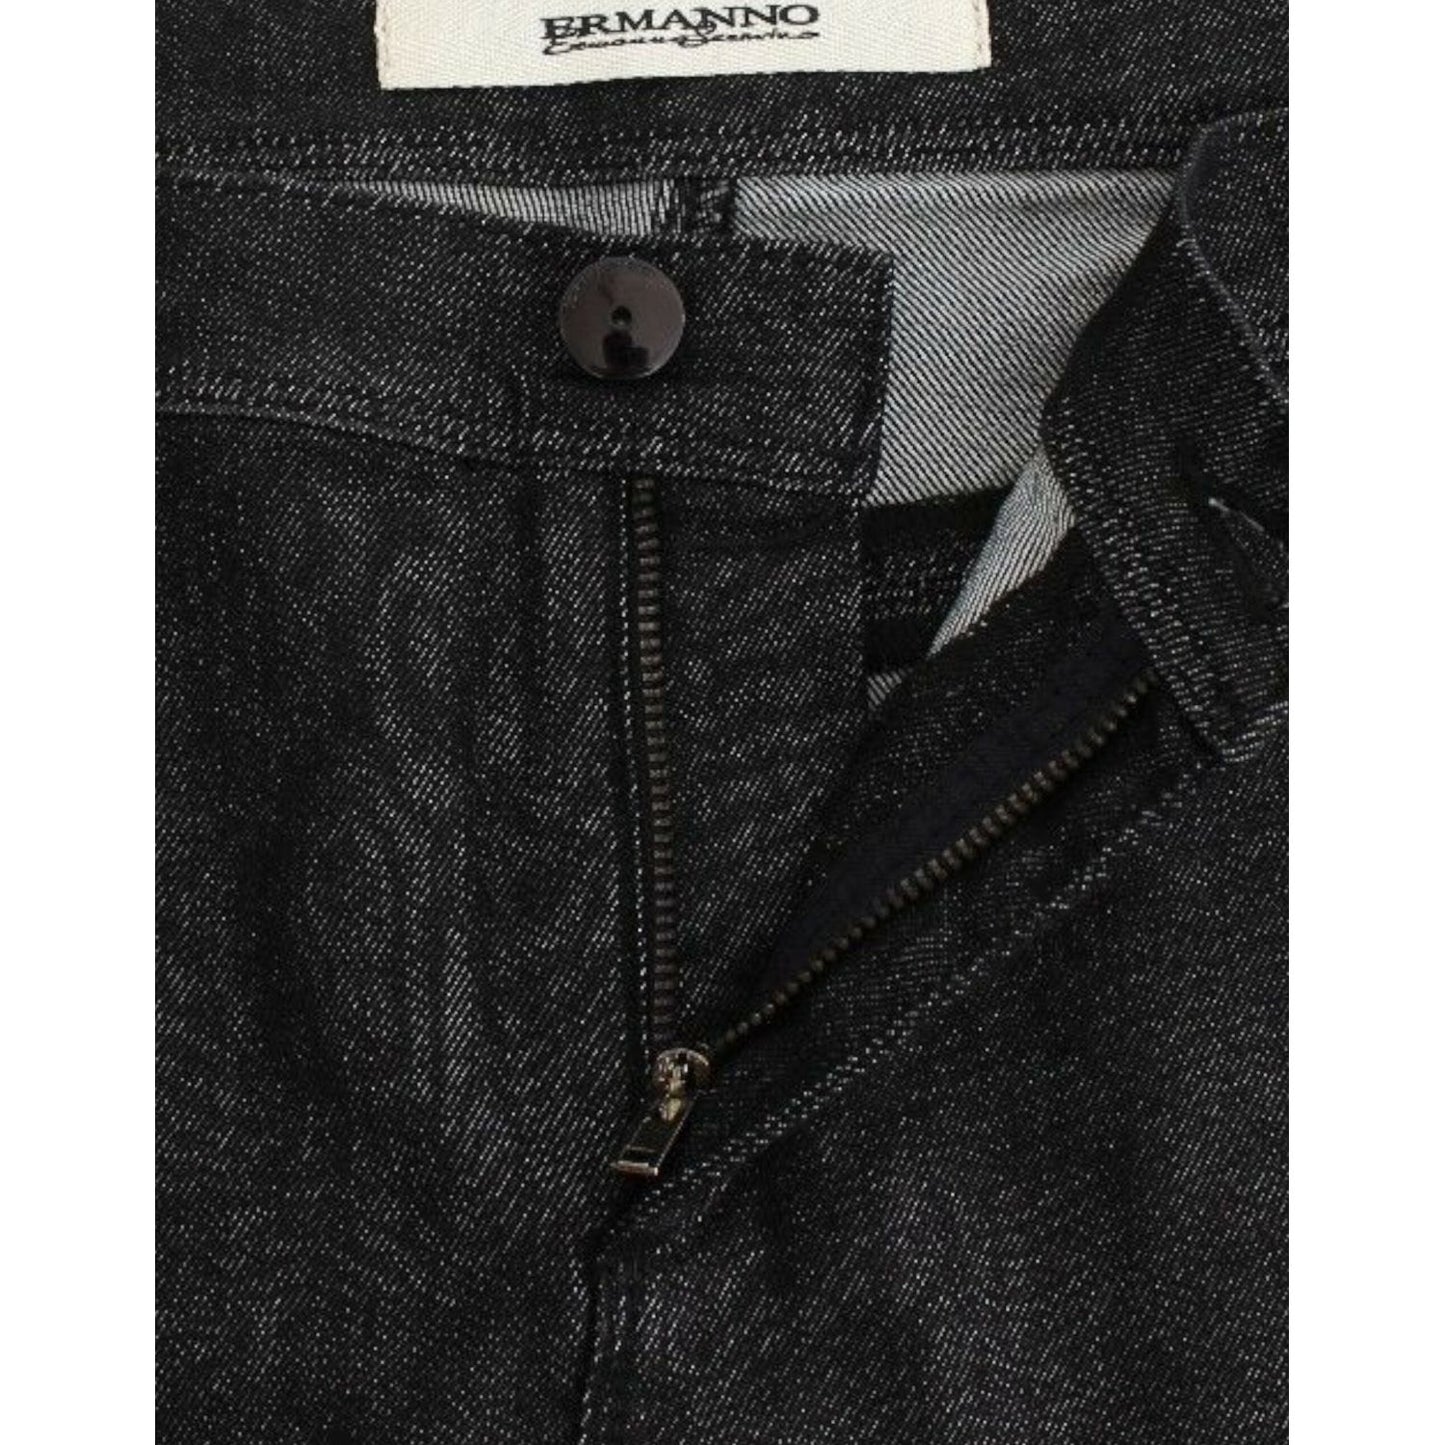 Ermanno ScervinoChic Black Skinny Jeans - Elegant & Slim FitMcRichard Designer Brands£149.00